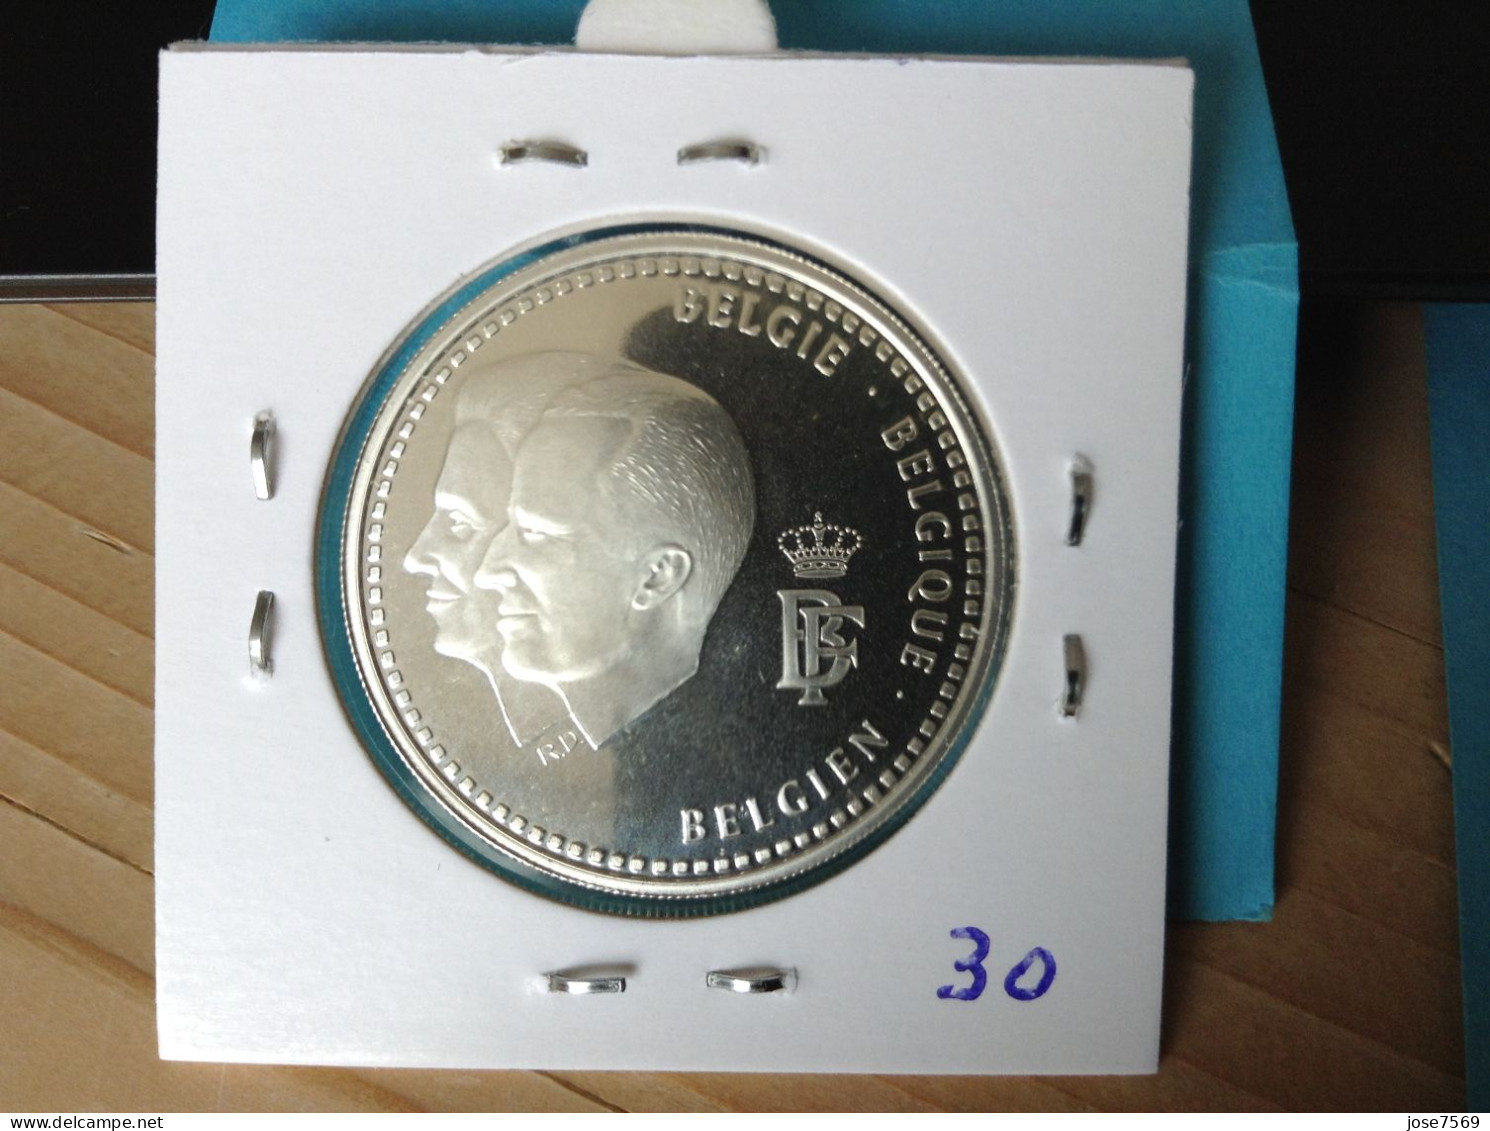 België Albert II  250 Frank 1996 PROOF Zilver. (Morin 973) - 250 Francs